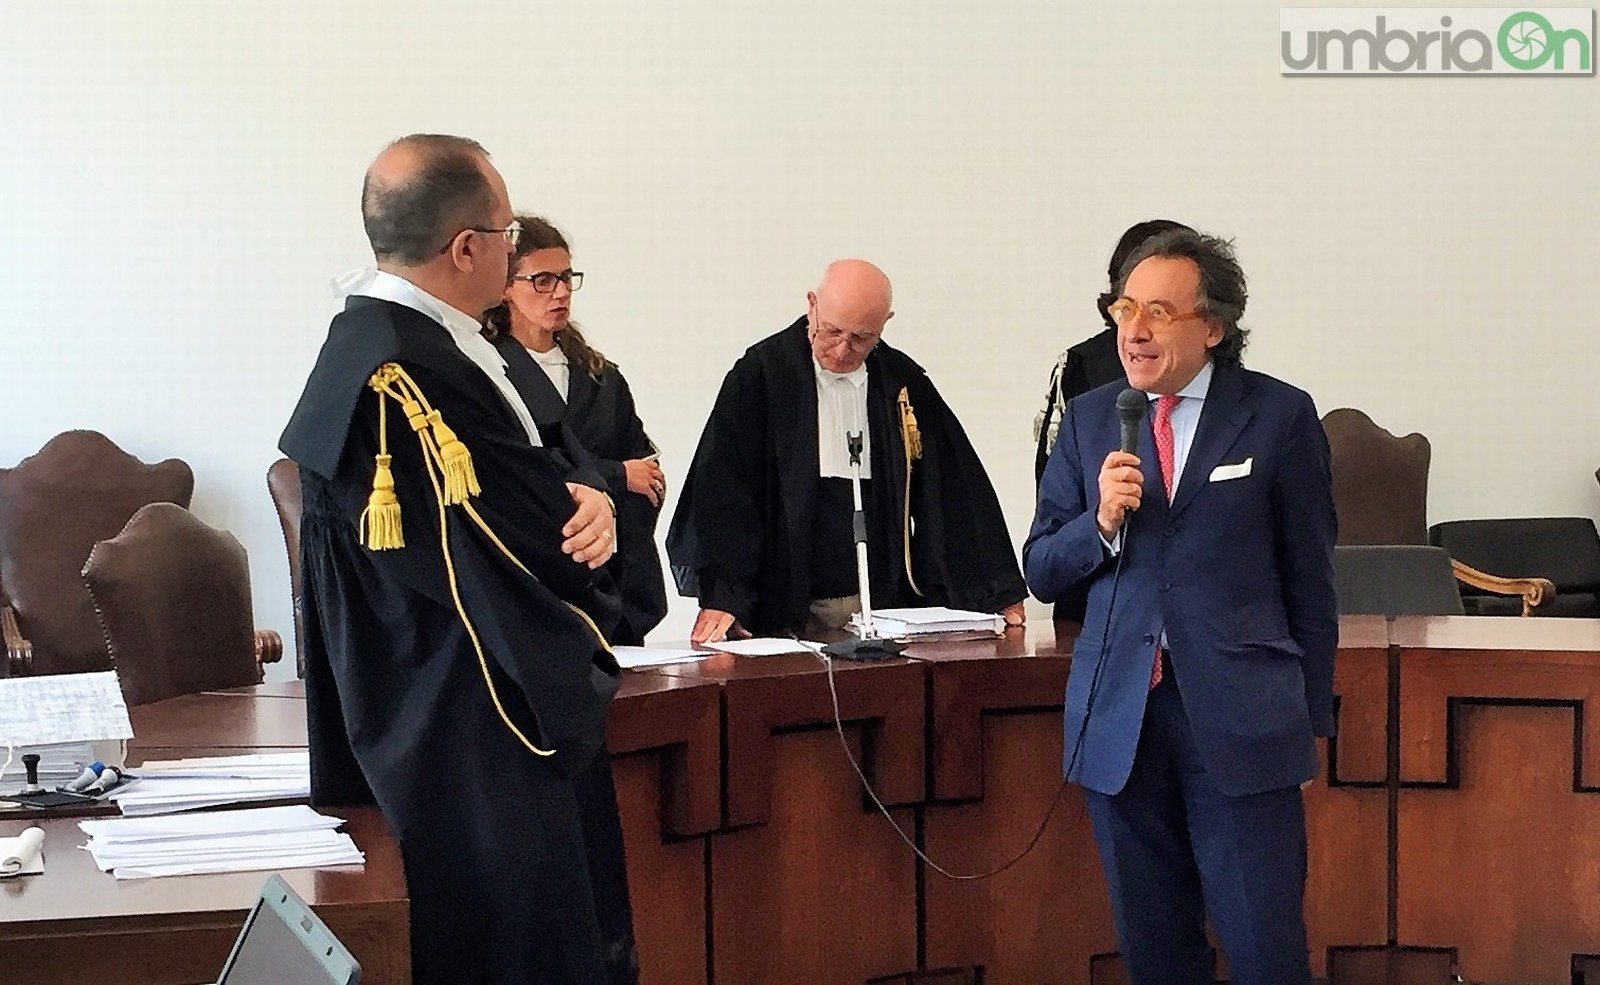 Insediamento nuovo procuratore Terni, Alberto Liguori, giuramento tribunale - 12 aprile 2016 (15)